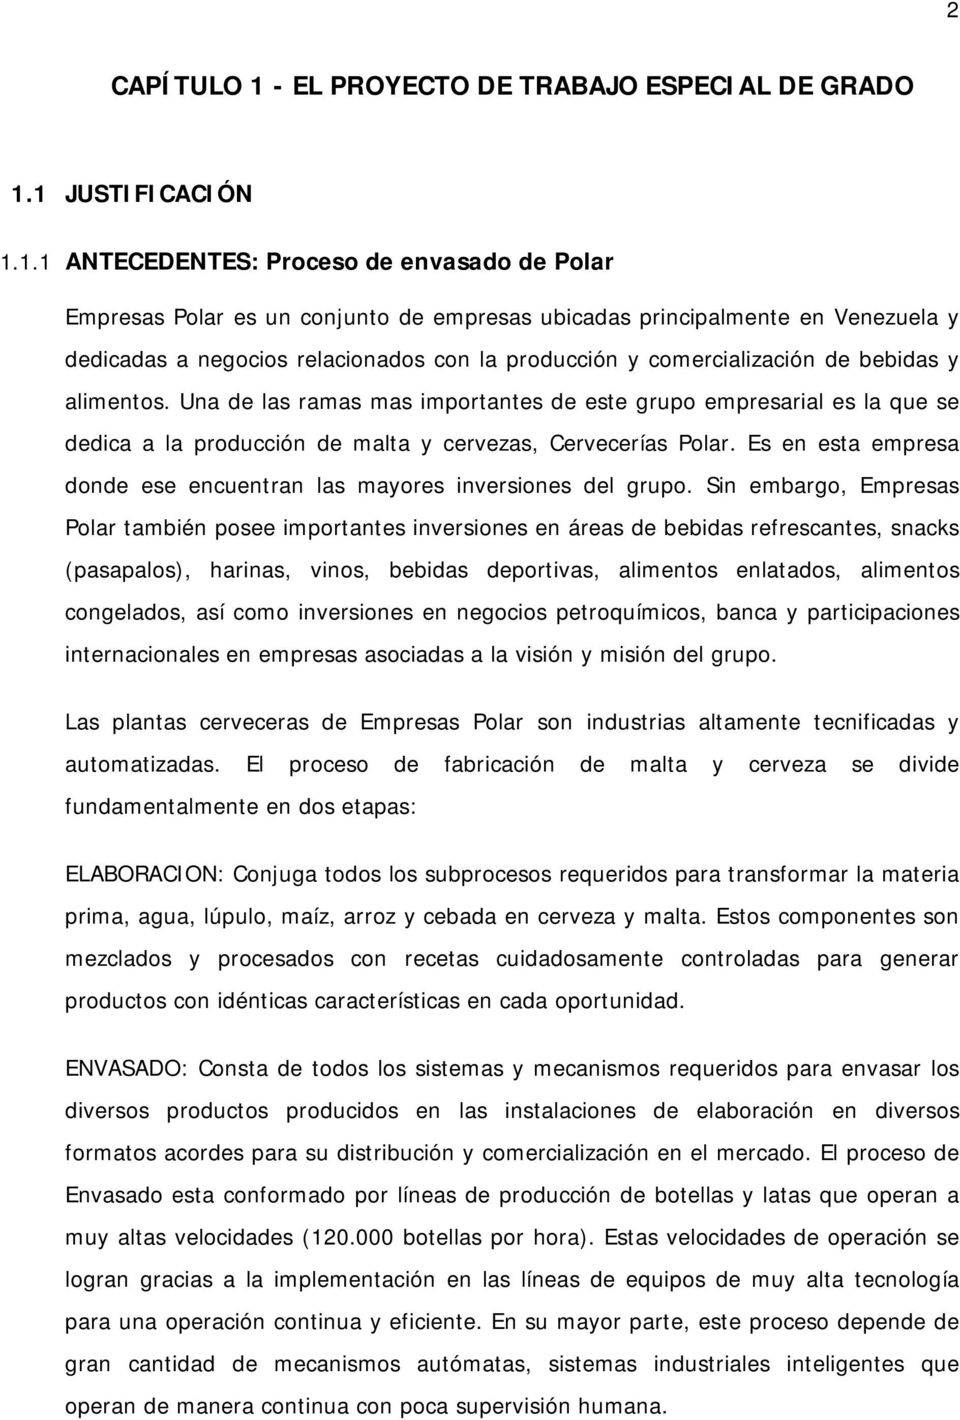 1 JUSTIFICACIÓN 1.1.1 ANTECEDENTES: Proceso de envasado de Polar Empresas Polar es un conjunto de empresas ubicadas principalmente en Venezuela y dedicadas a negocios relacionados con la producción y